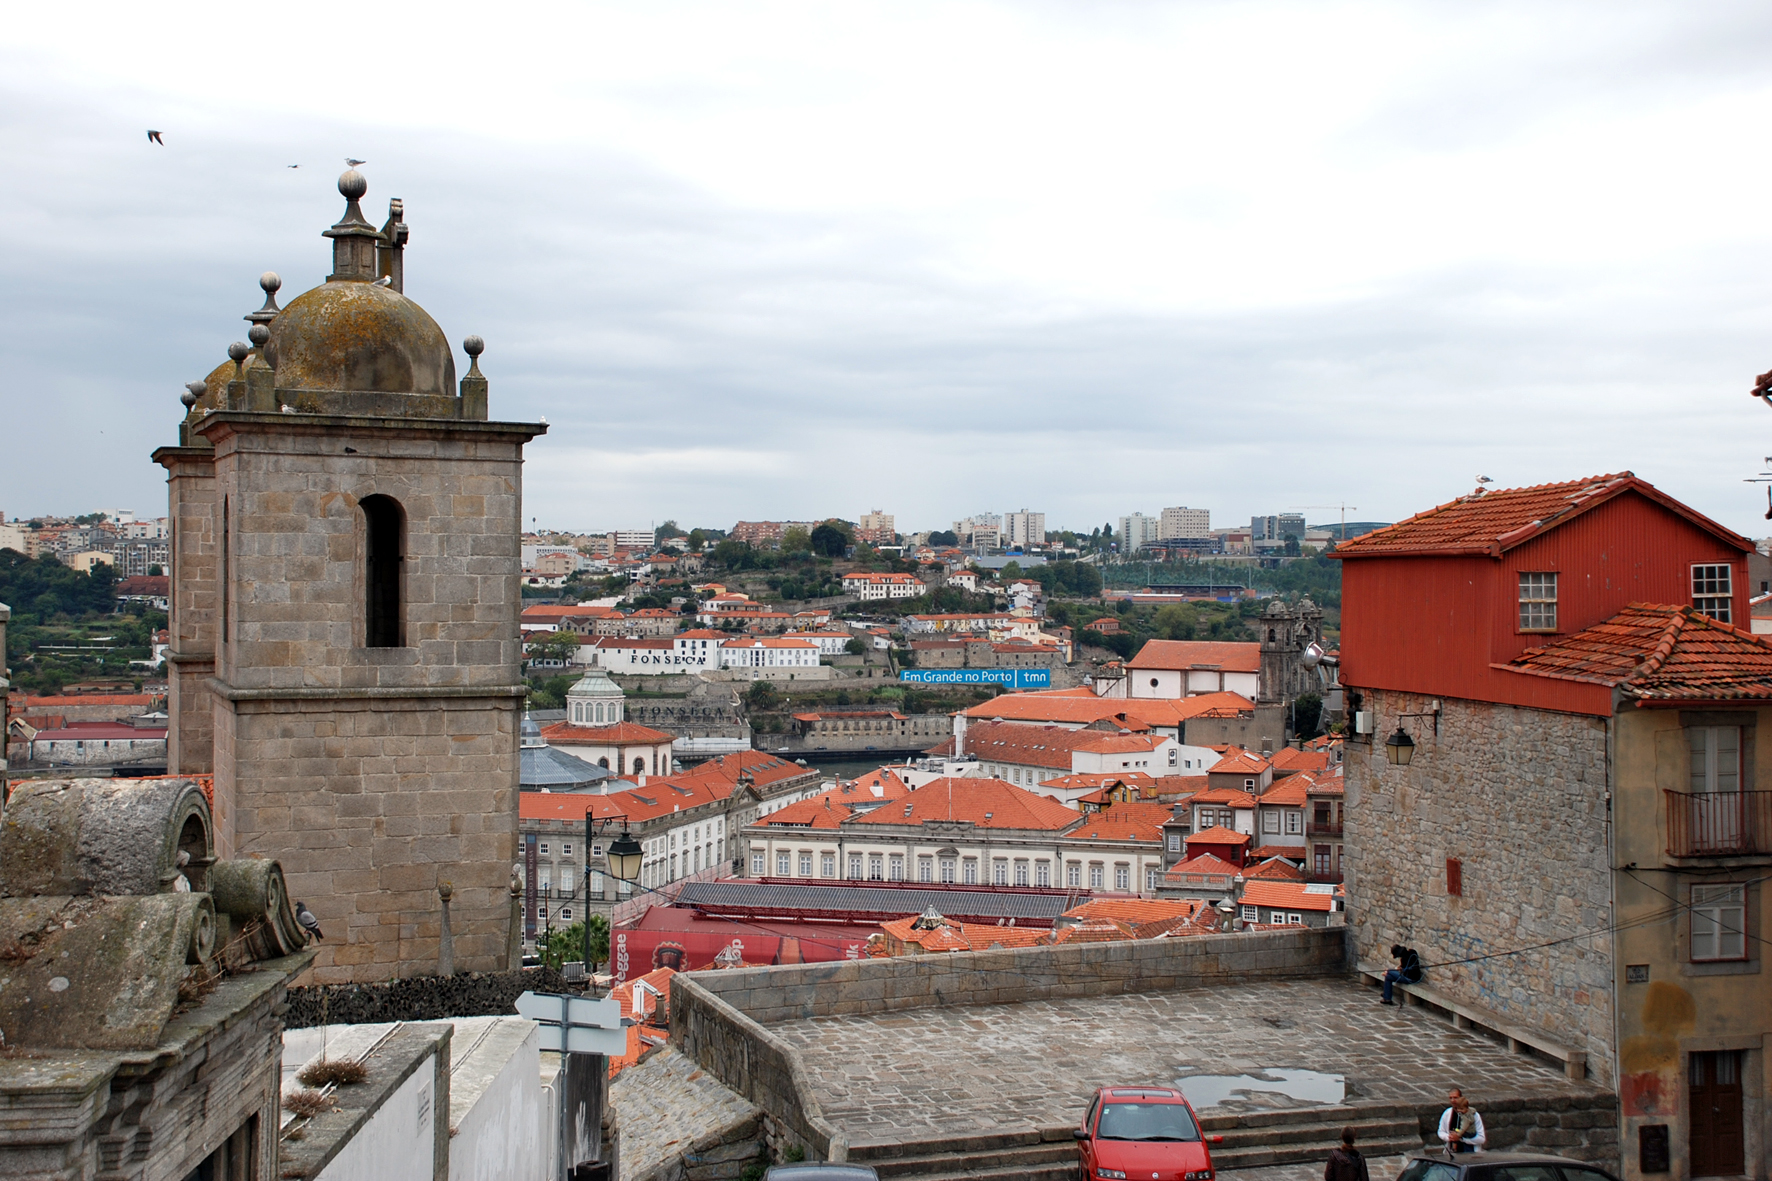 Фотография №65 - город Порту в Португалии